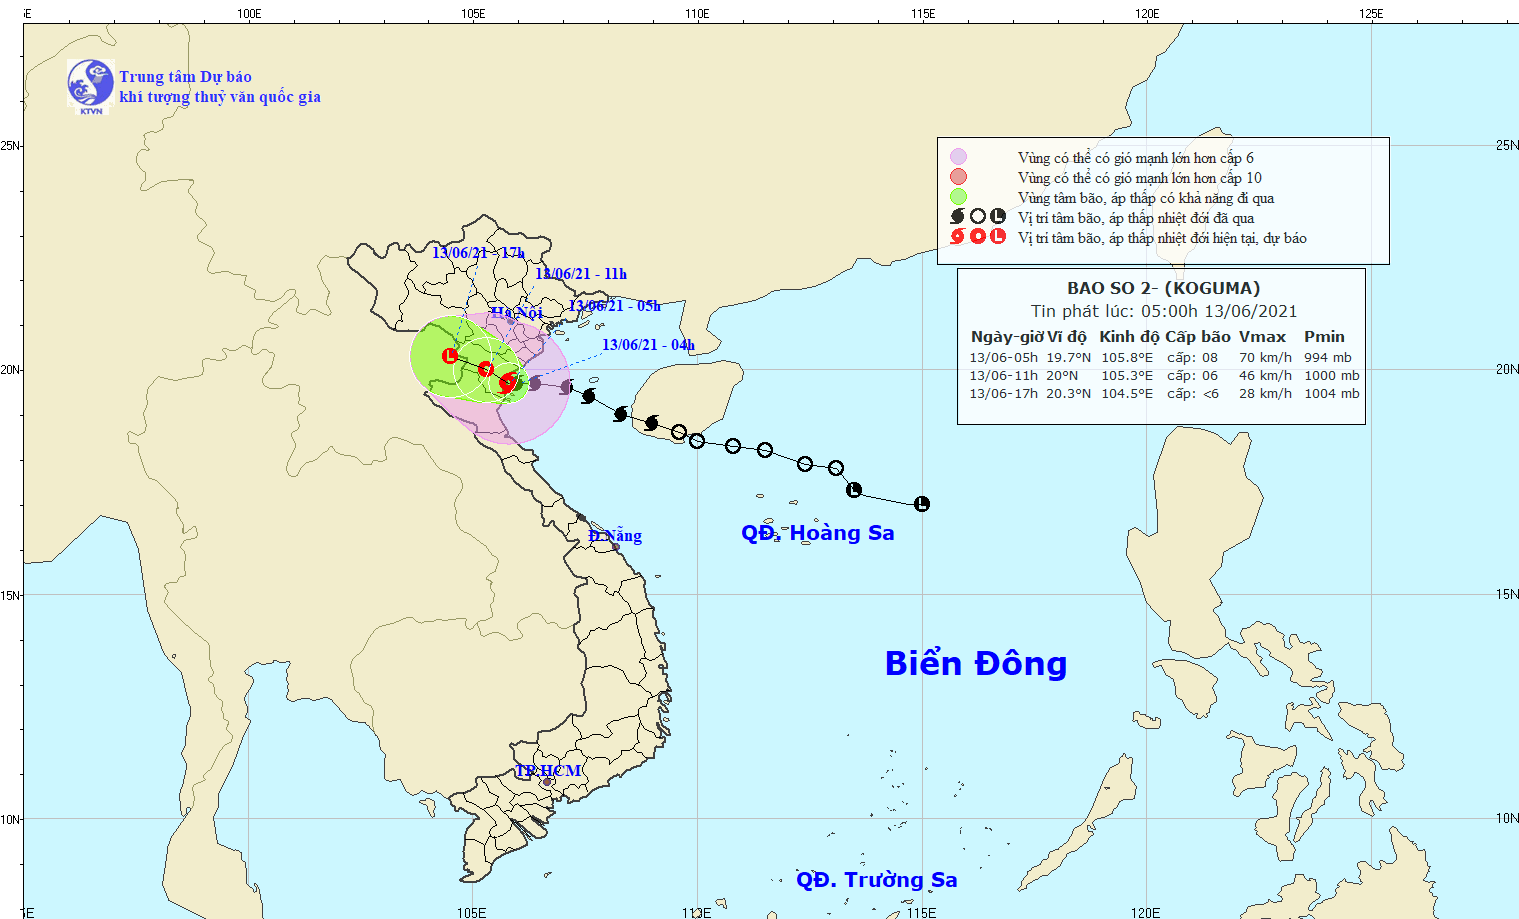 Ảnh hưởng cơn bão số 2, các tỉnh phía Bắc và Bắc Trung Bộ có nơi ...